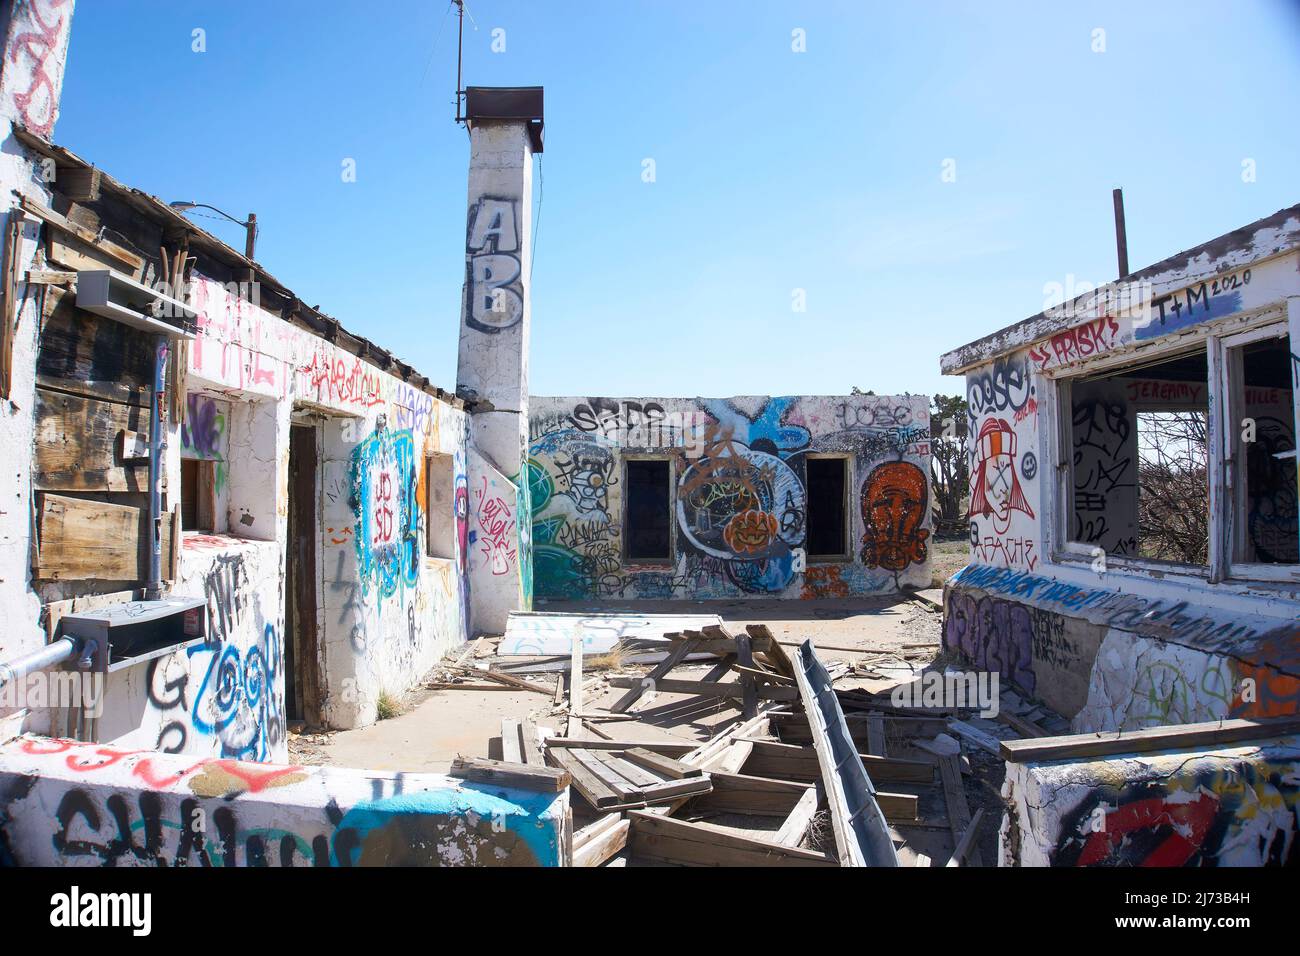 Abandoned graffiti filled gas station in Arizona, USA. Stock Photo